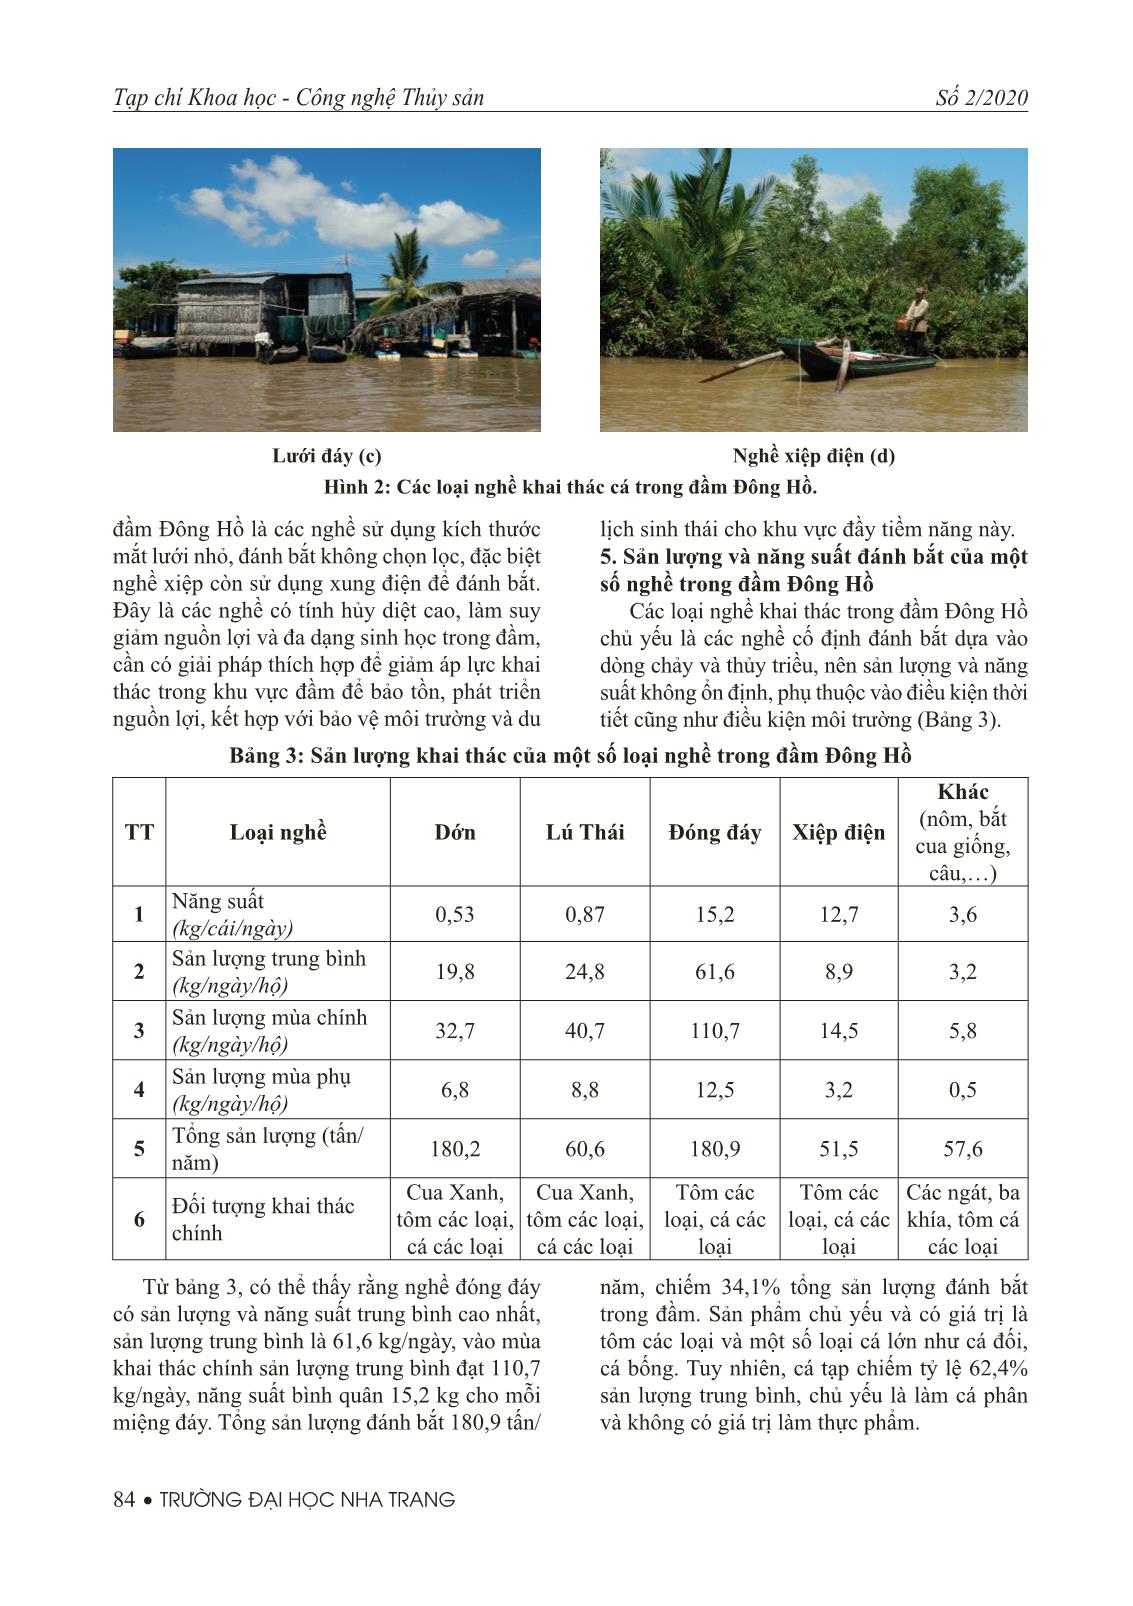 Thành phần loài và các loại nghề khai thác cá ở đầm Đông Hồ, Hà Tiên tỉnh Kiên Giang trang 6